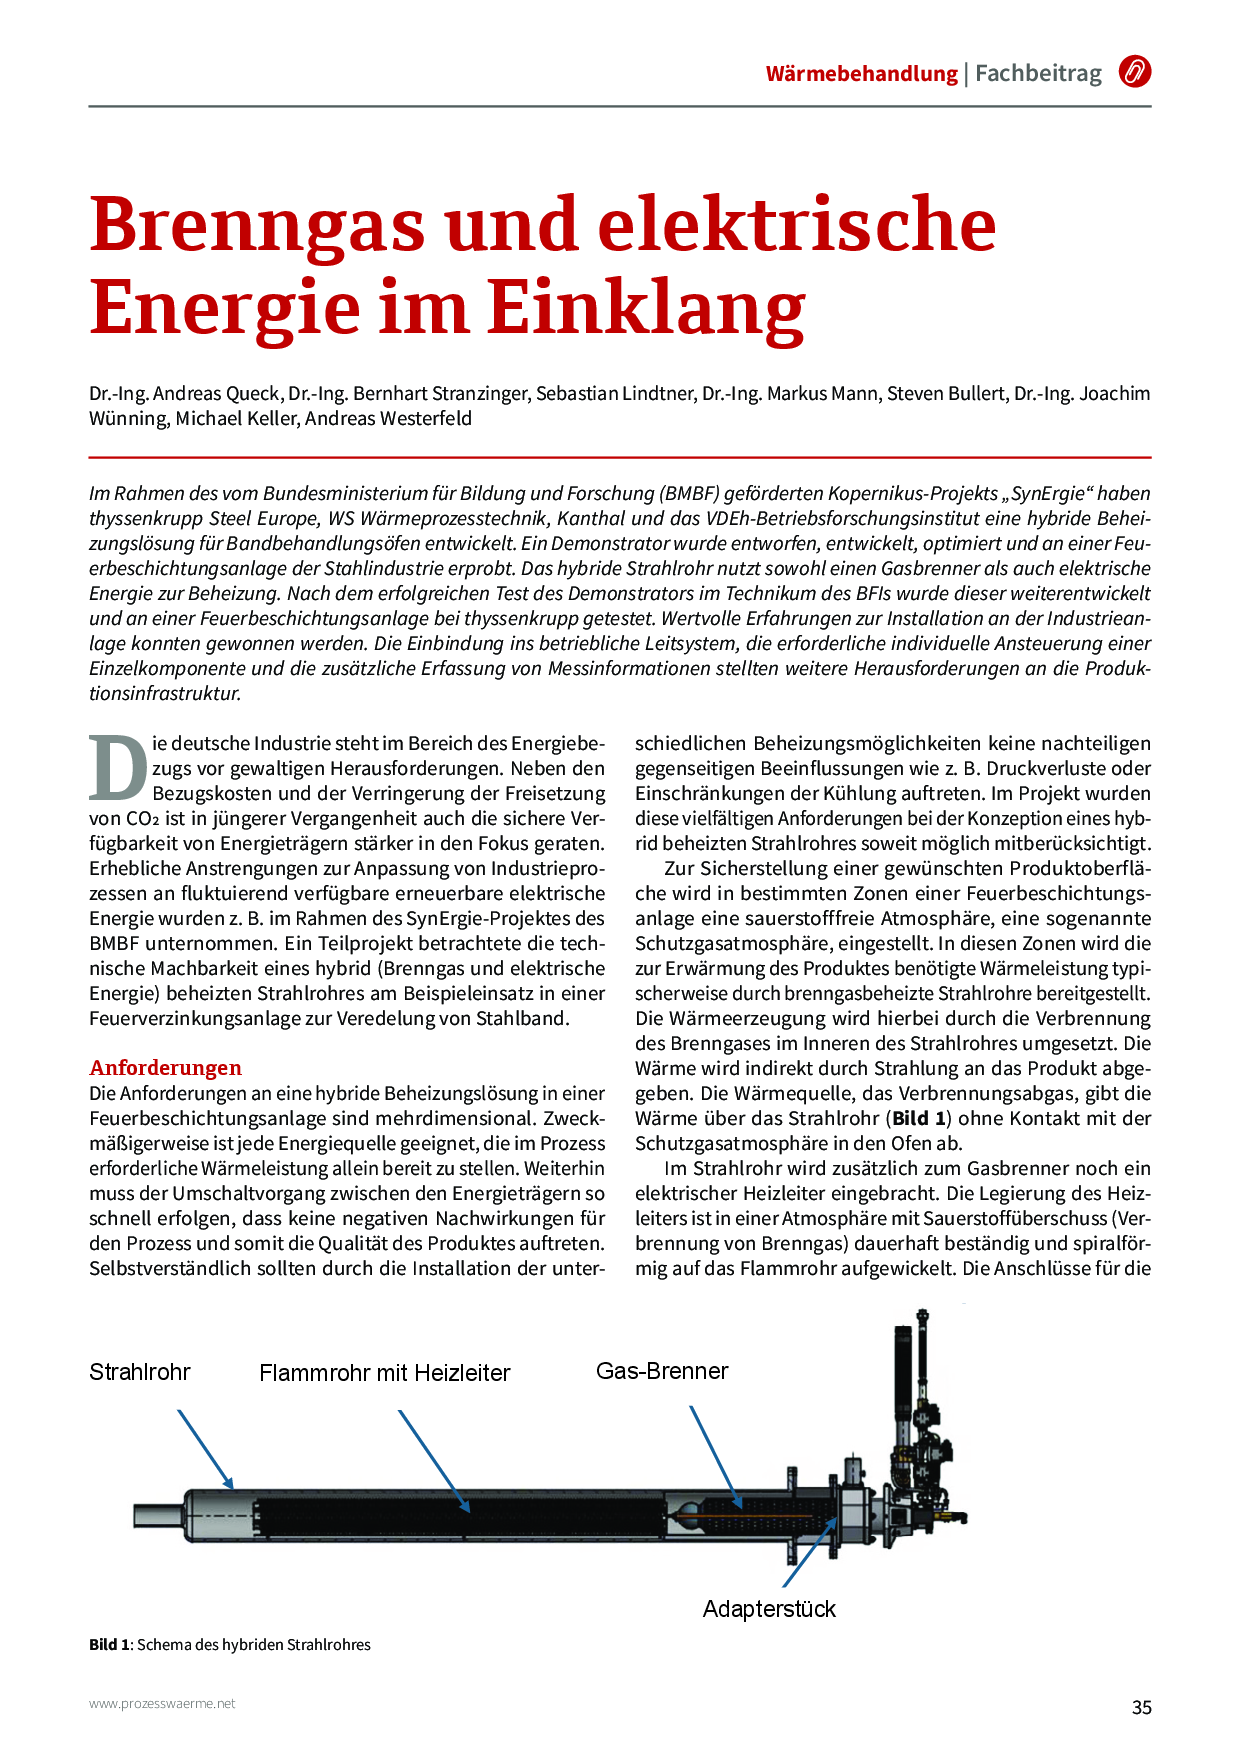 Brenngas und elektrische Energie im Einklang